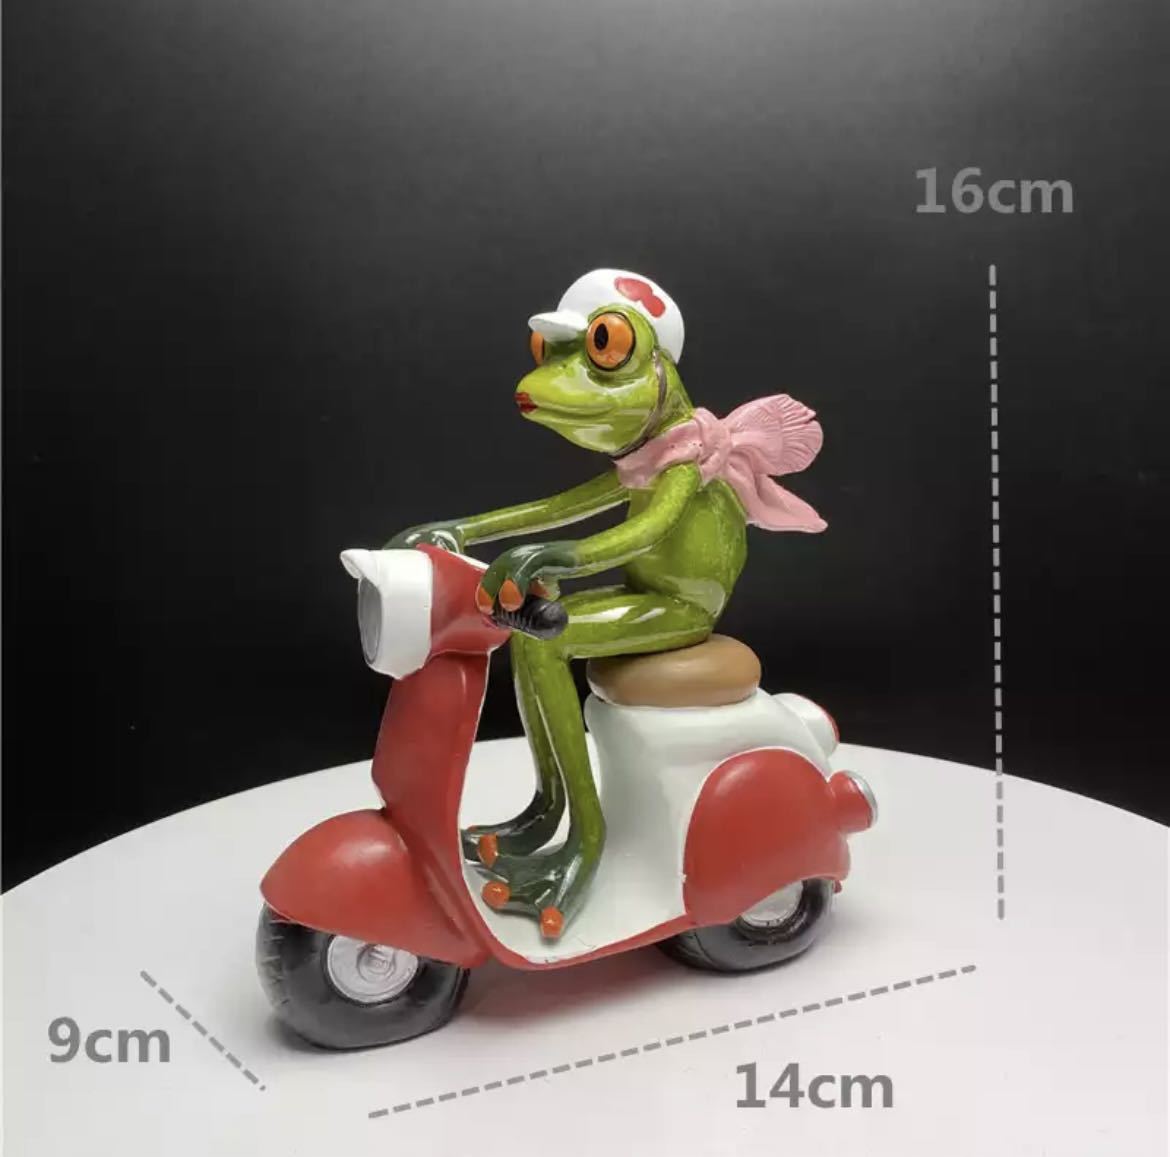 개구리 인형 레진 개구리 인형 장식물 인테리어 상품 인형 소품 상품 독특하고 귀여운 장식 오토바이 1560, 핸드메이드 아이템, 내부, 잡화, 장식, 물체